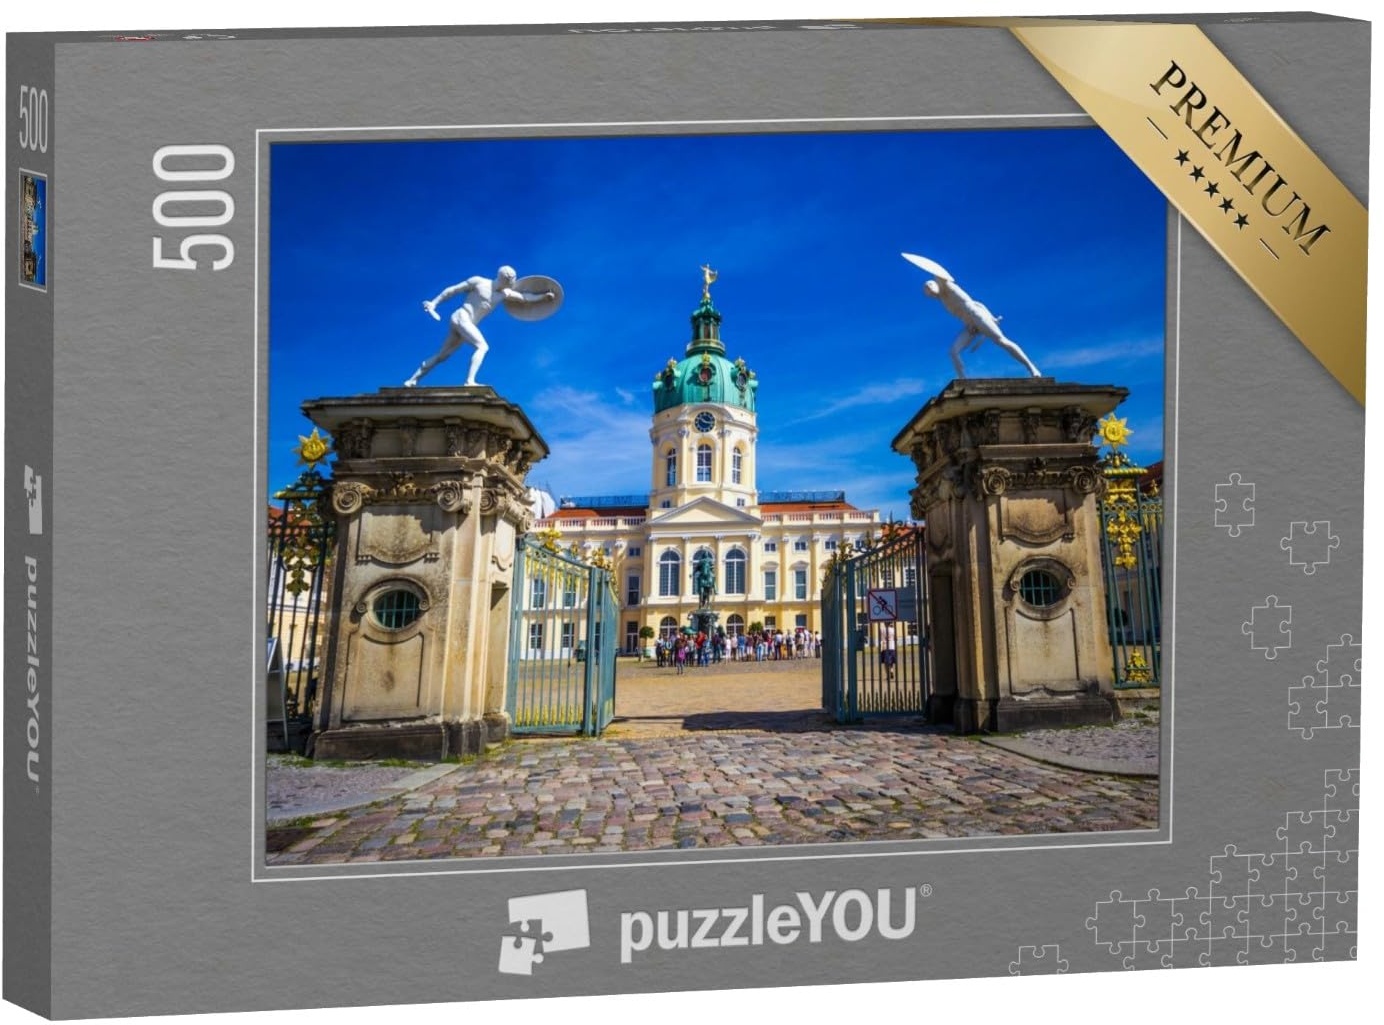 puzzleYOU: Puzzle 500 Teile „Ehemalige Sommerresidenz der preußischen Könige: Schloss Charlottenburg in Berlin“ – aus der Puzzle-Kollektion Schlösser